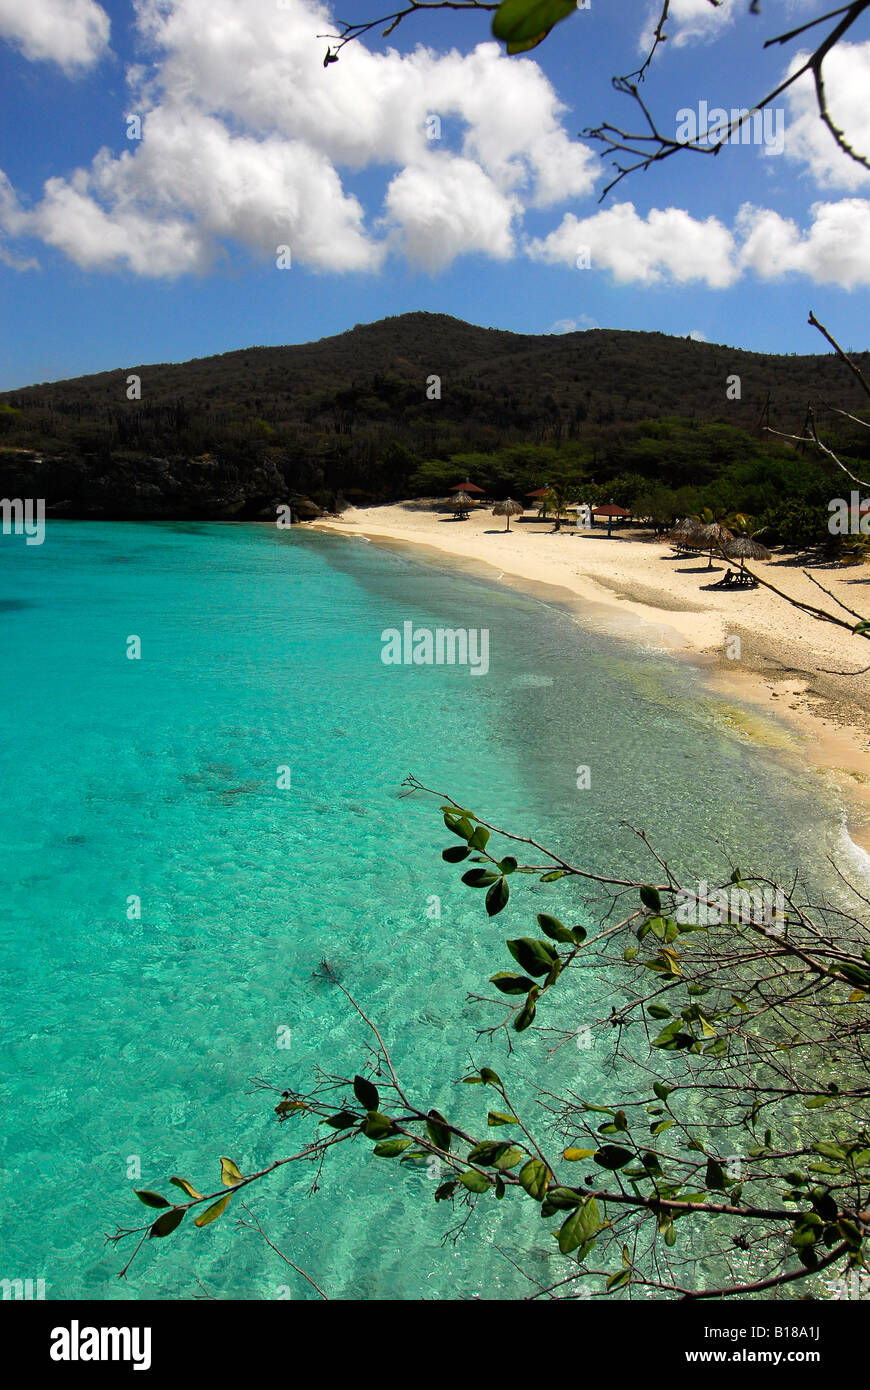 Strand von Curacao Karibik Antillen Curacao Stockfoto